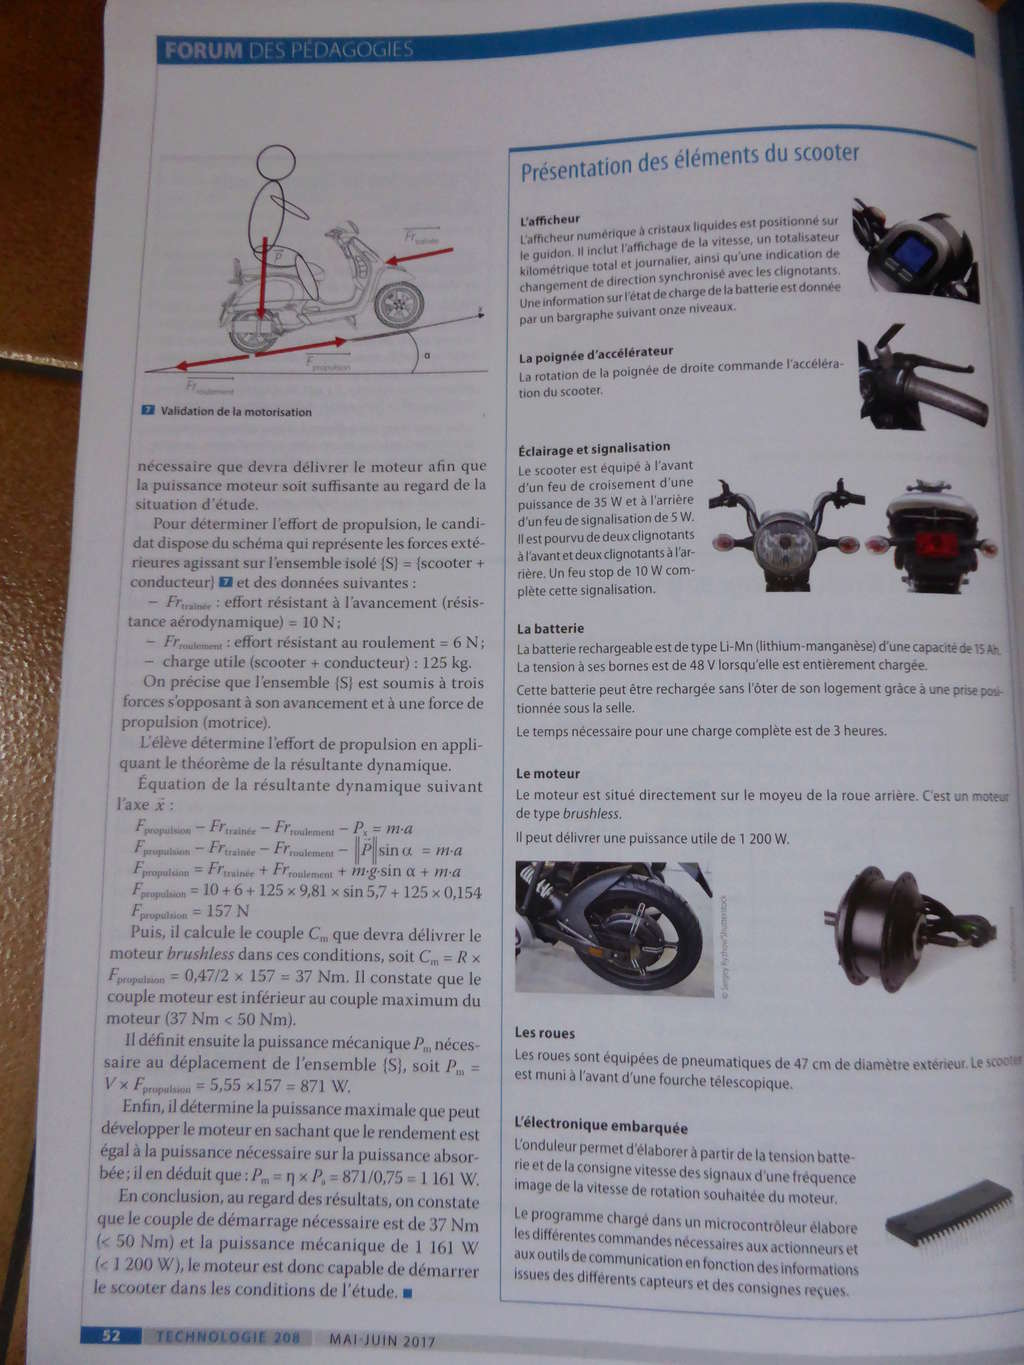 LECTURE sur les cycles motorisés (livre, magasine, blog...) - Page 3 P1080853